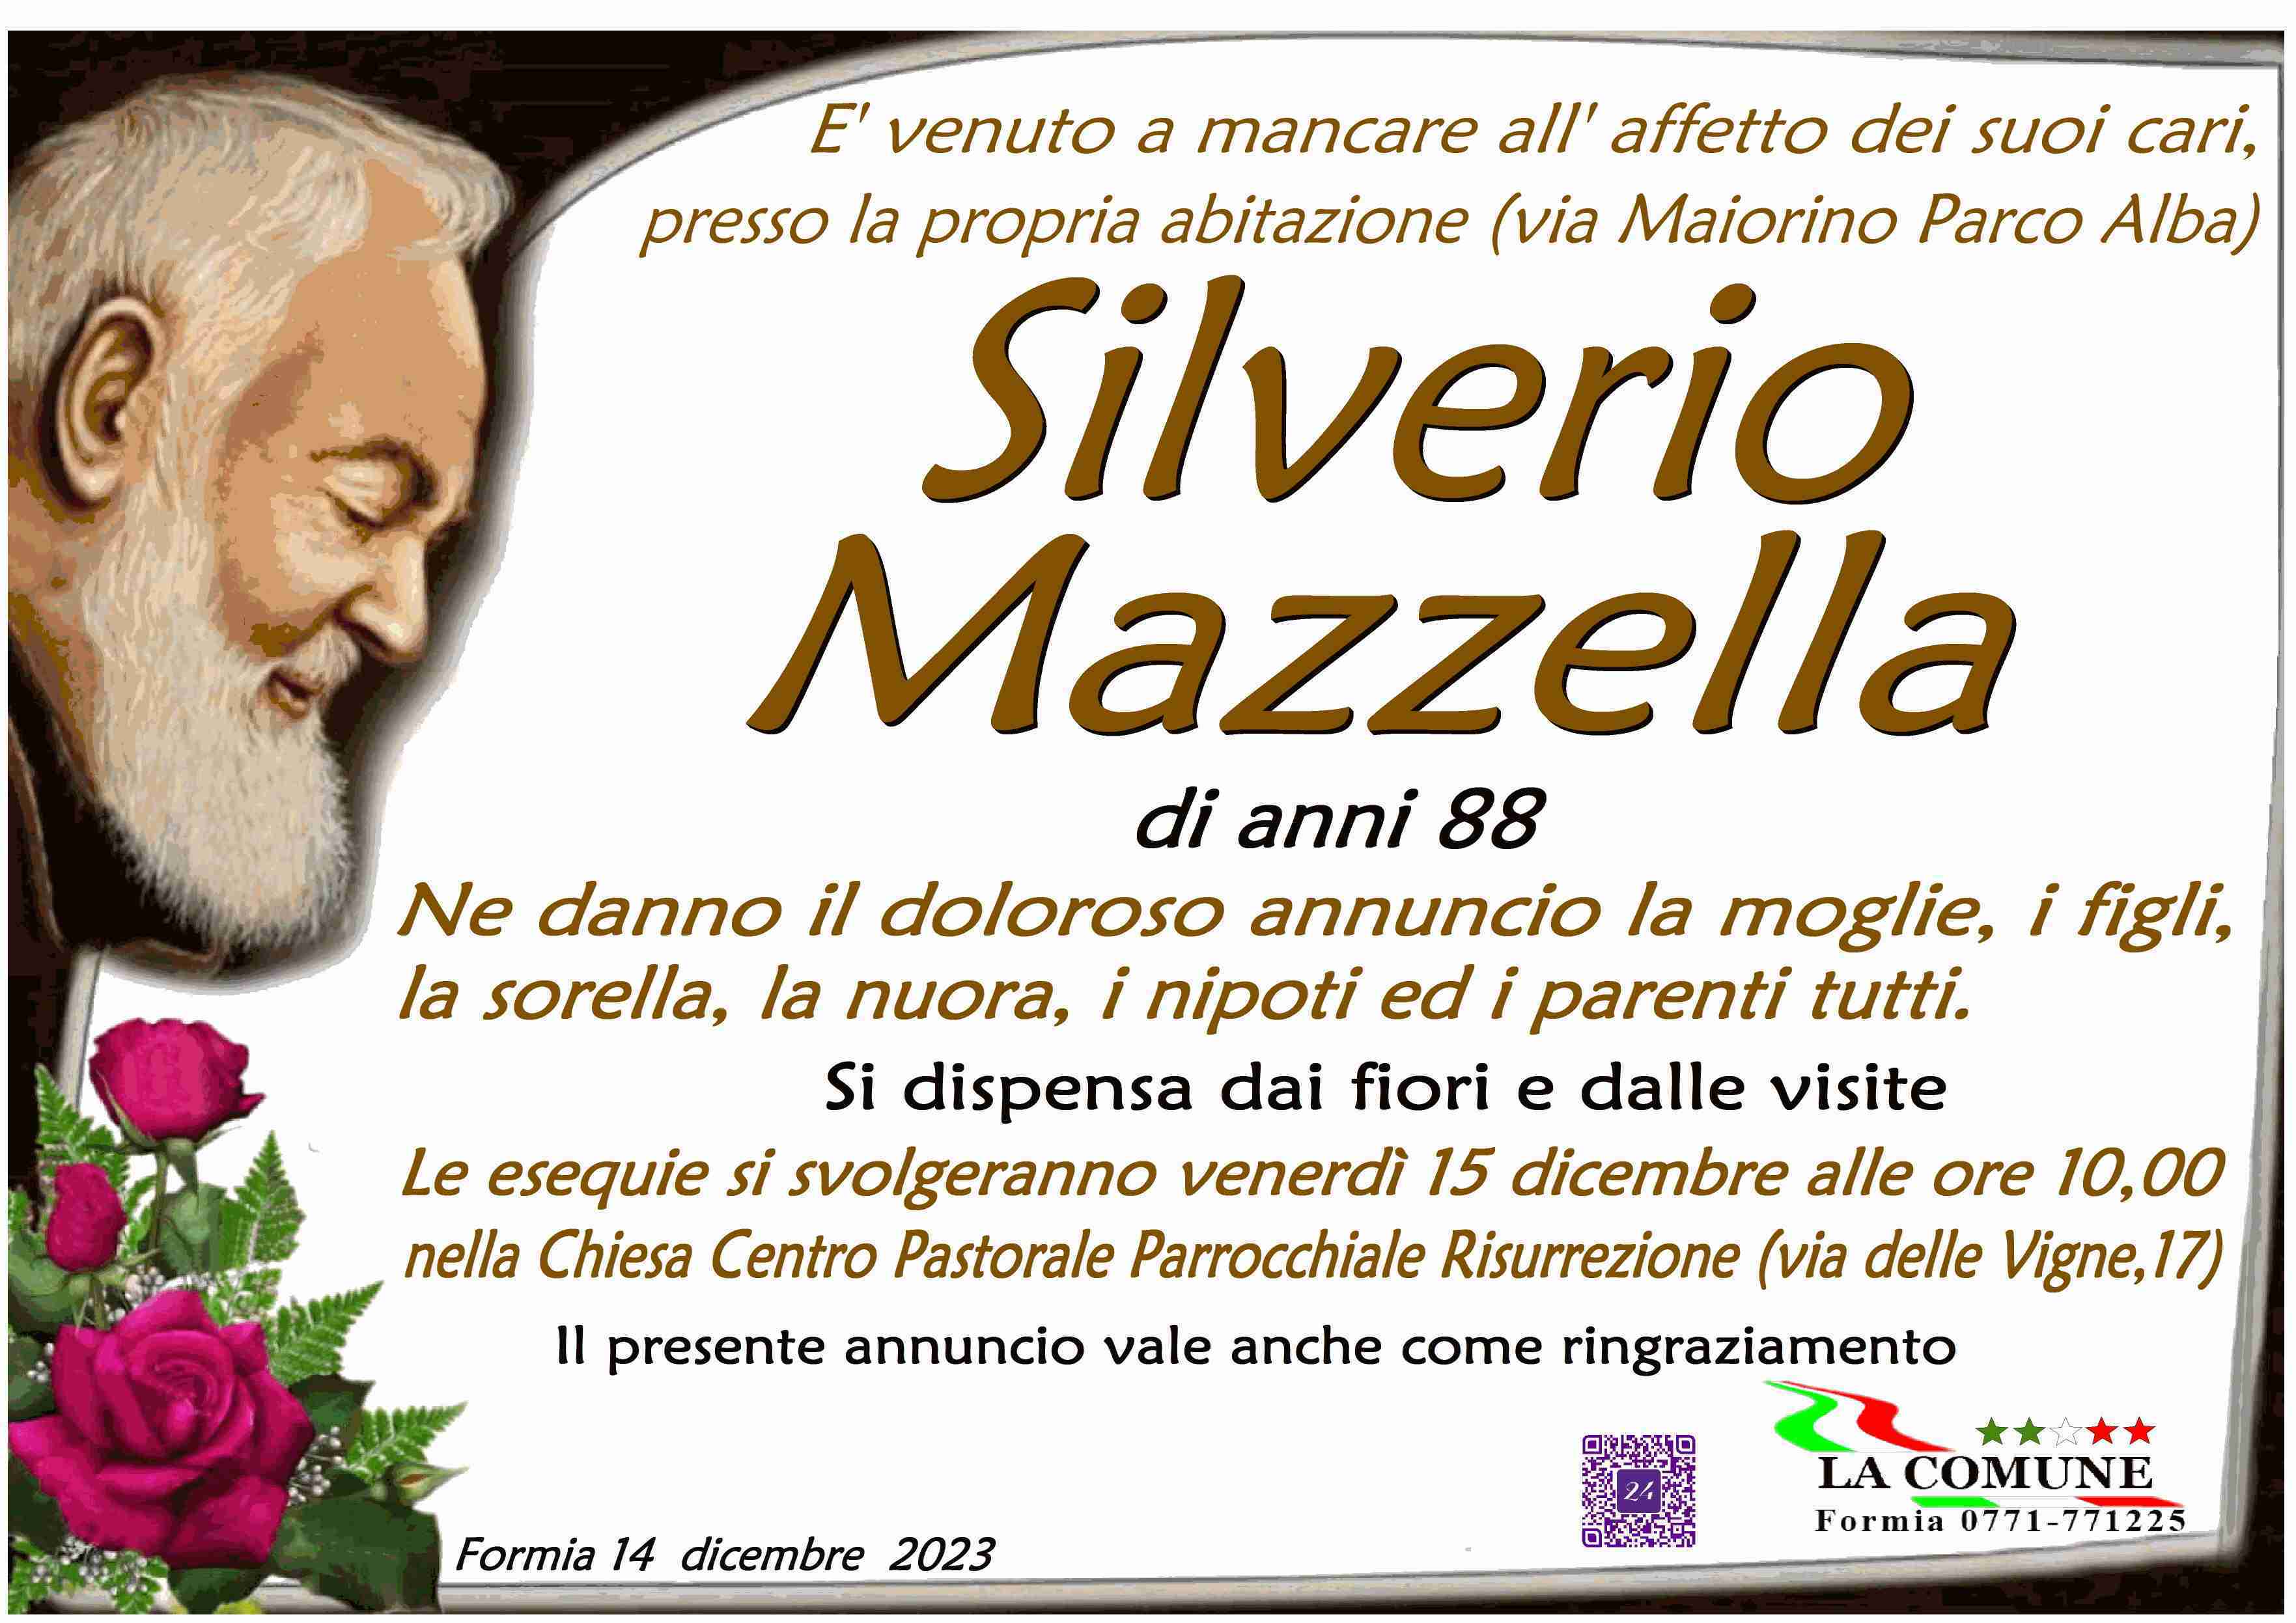 Silverio Mazzella